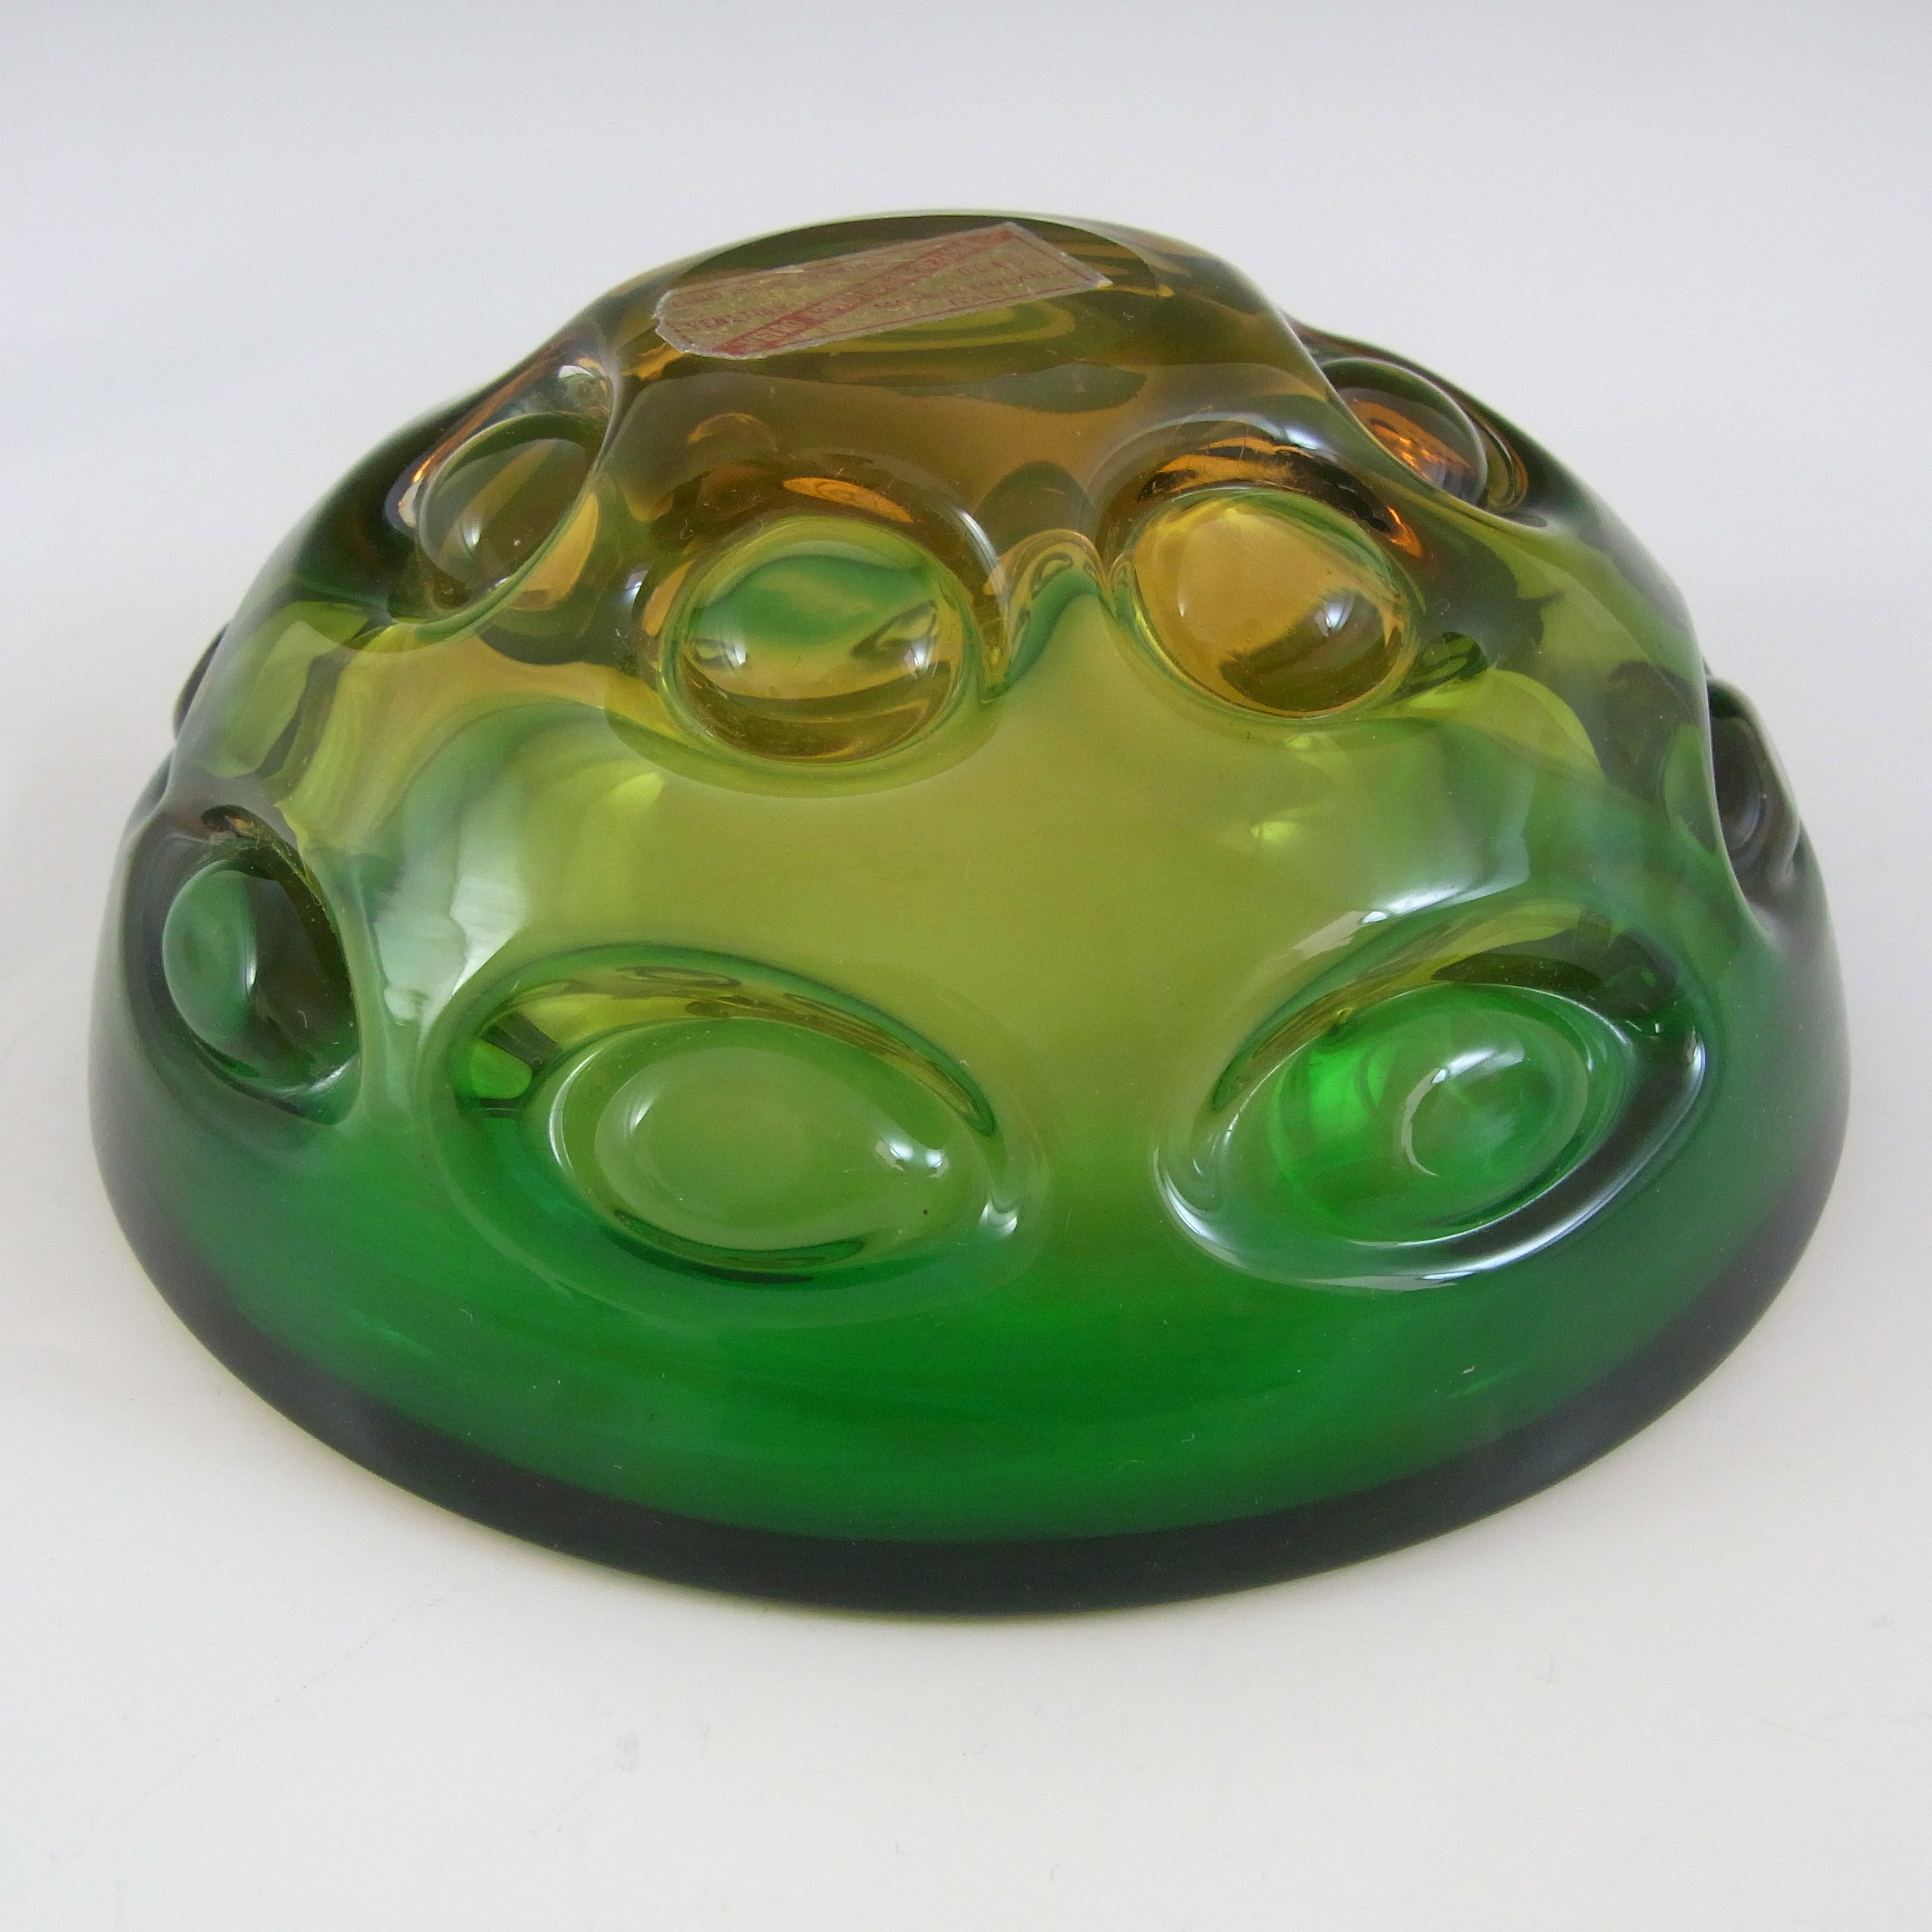 Vetro Artistico Veneziano Murano Green & Amber Glass Bowl - Click Image to Close